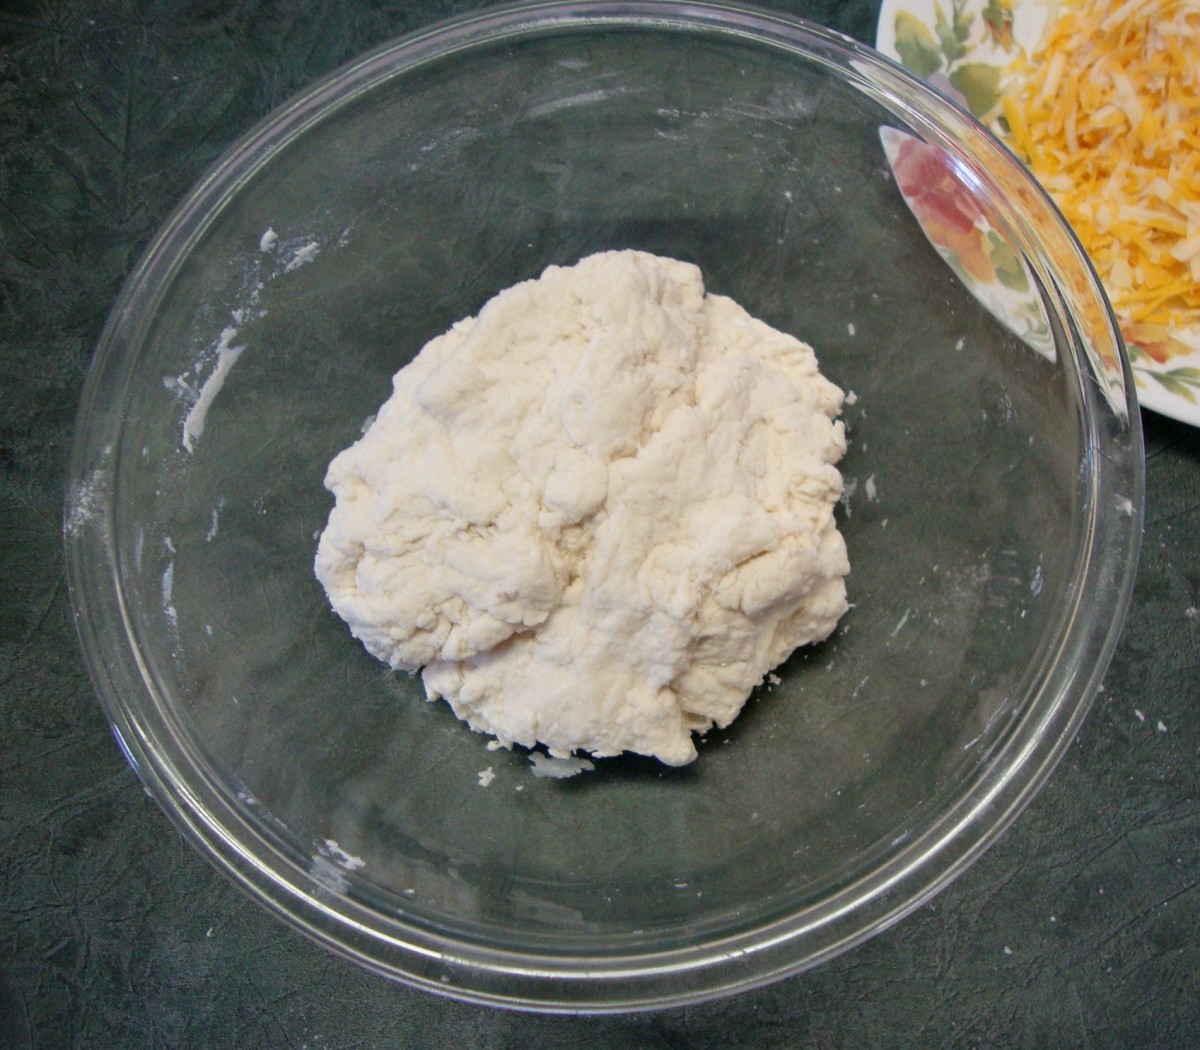 Form the dough into a ball.